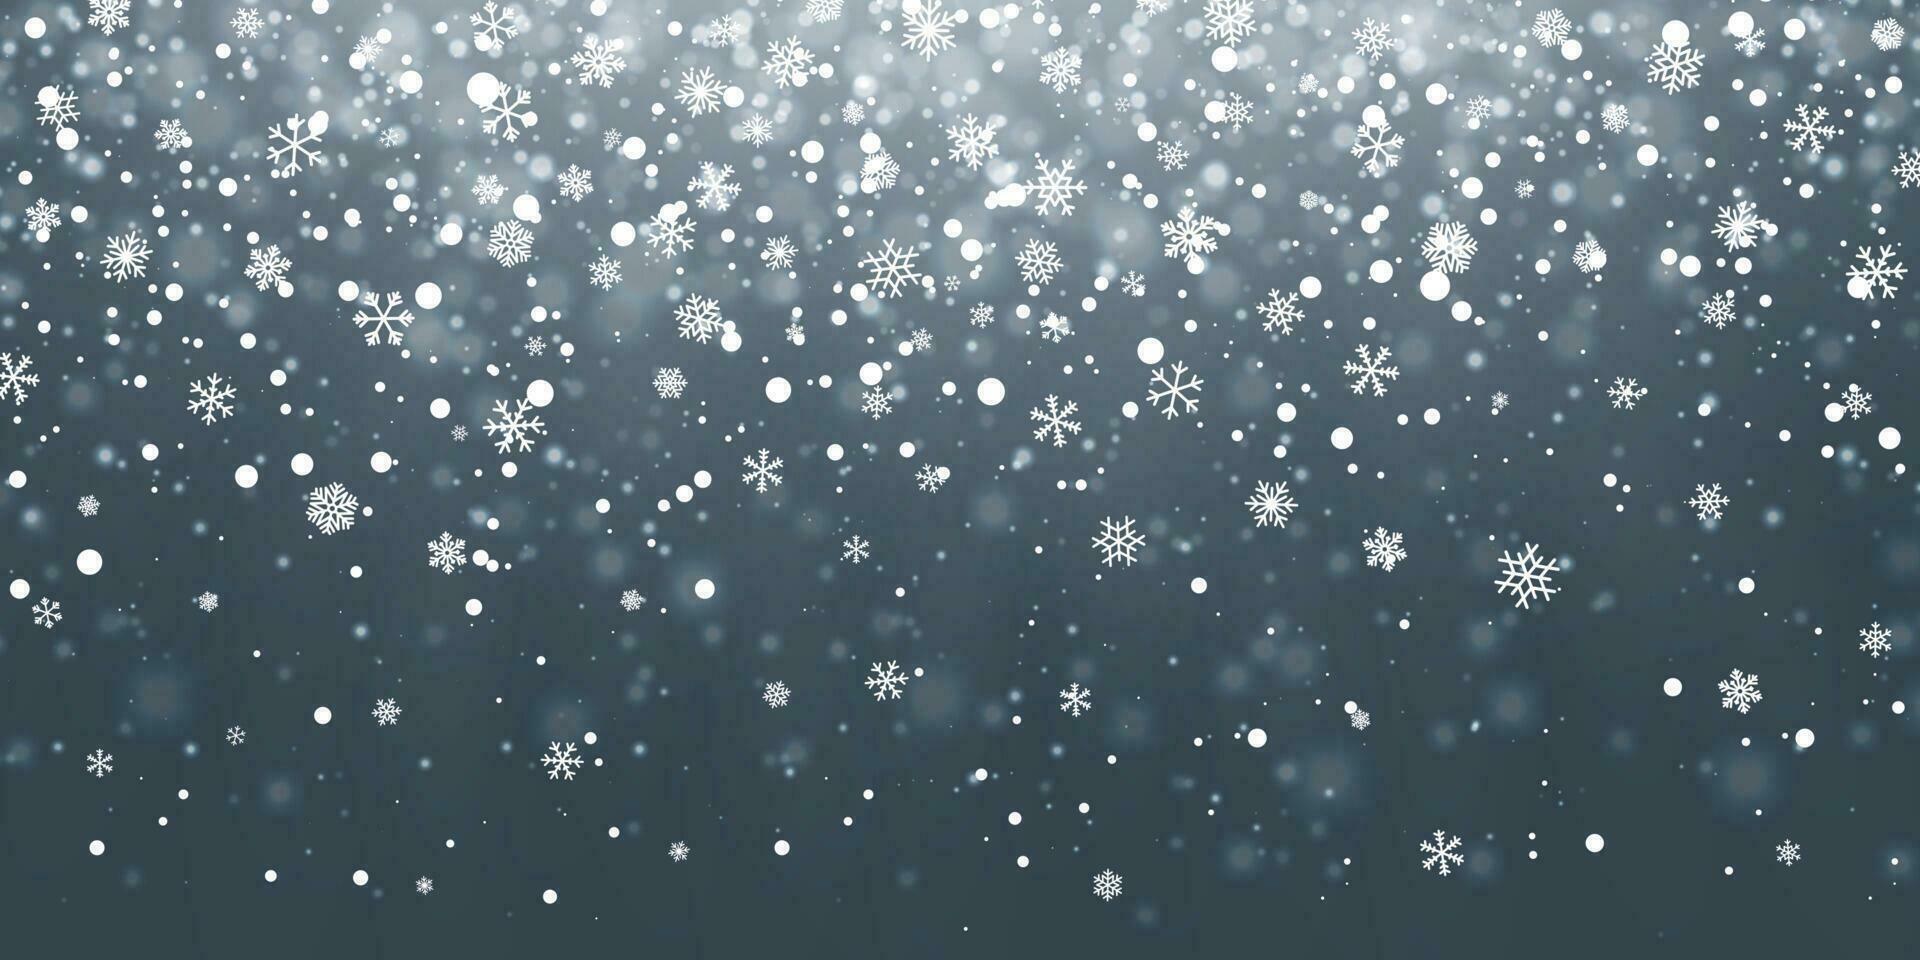 Natale neve. caduta i fiocchi di neve su blu sfondo. nevicata. vettore illustrazione